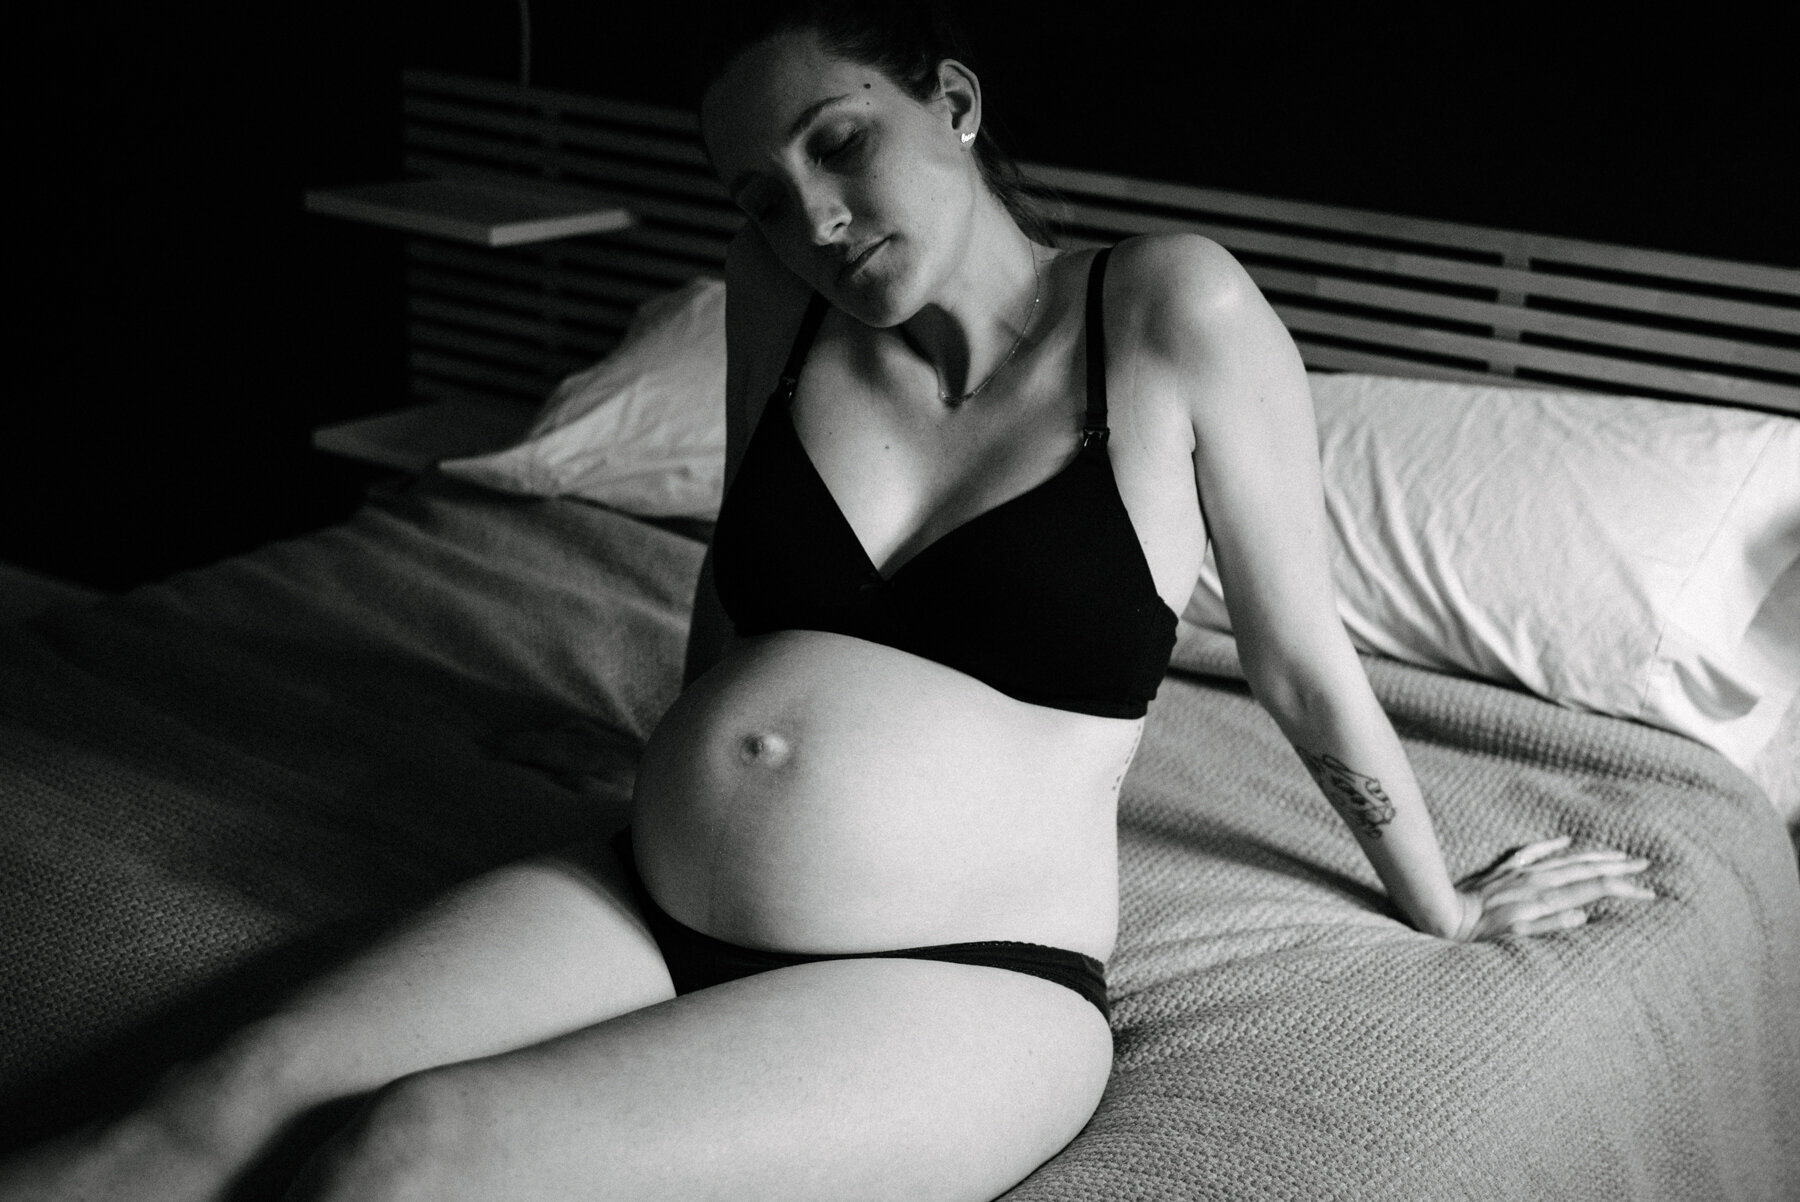 047photo-noir-et-blanc-intime-maman-en-sous-vetements-assise-sur-lit-photographe-de-maternite-nouveau-ne-a-montreal-marianne-charland-686.jpg